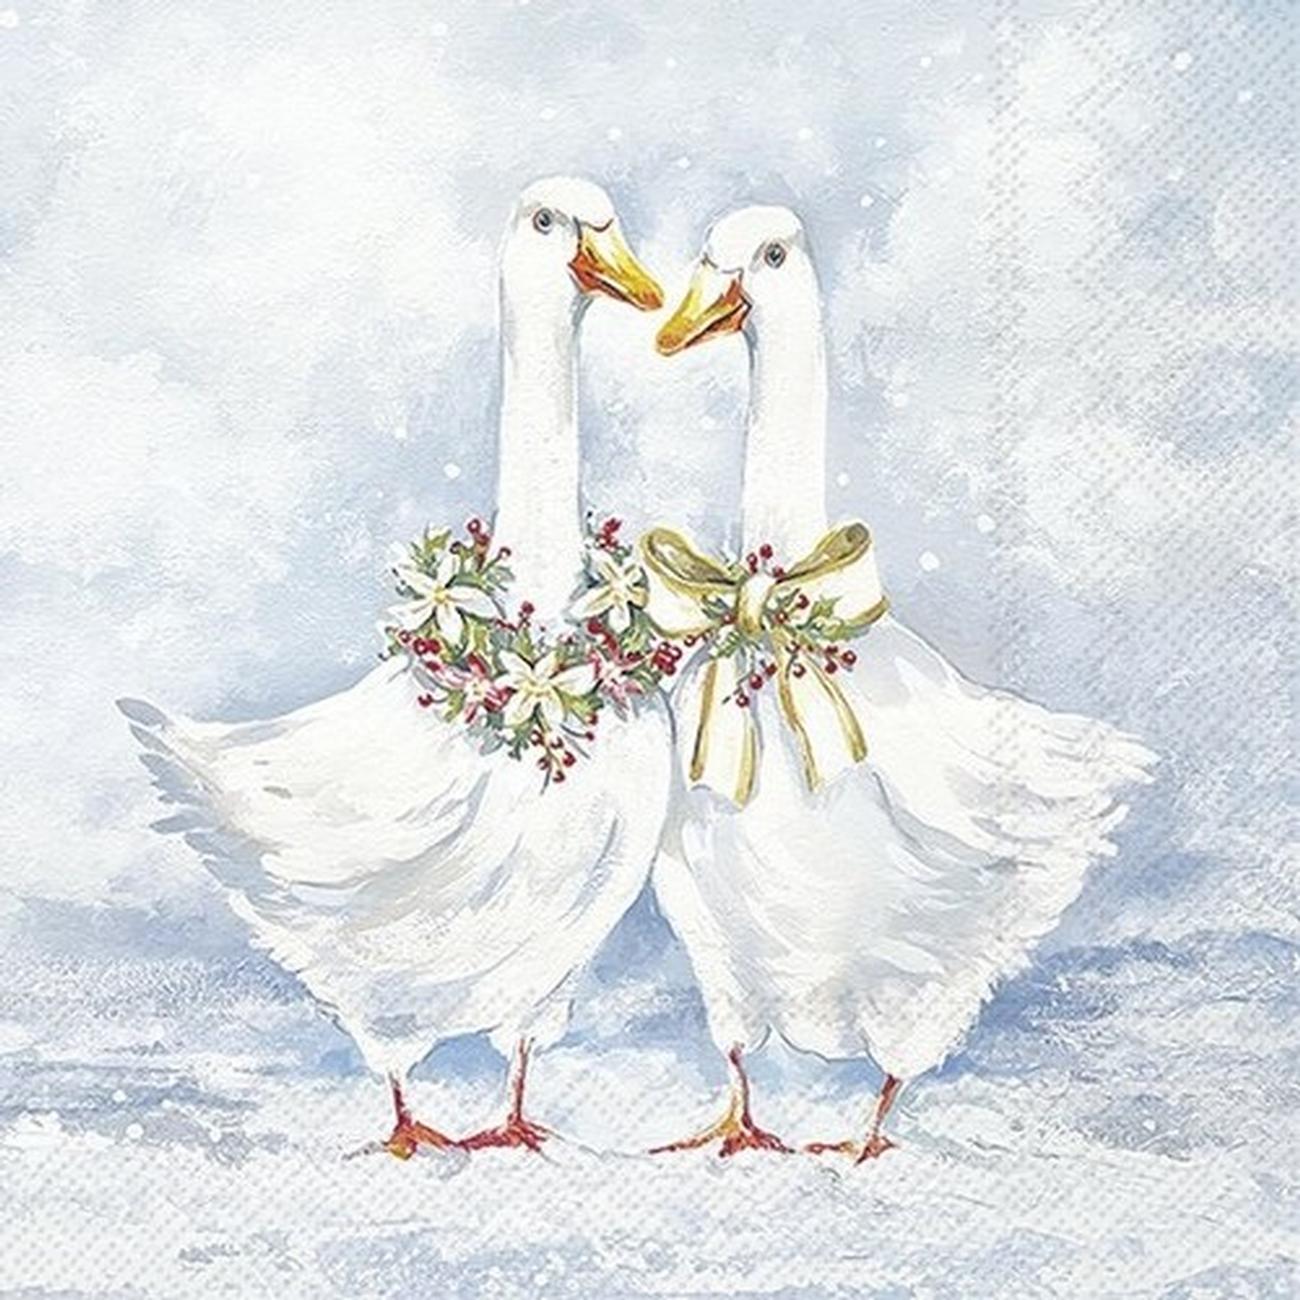 ihr-lunch-napkins-two-goose-friends - IHR Christmas Lunch Napkins Two Goose Friends